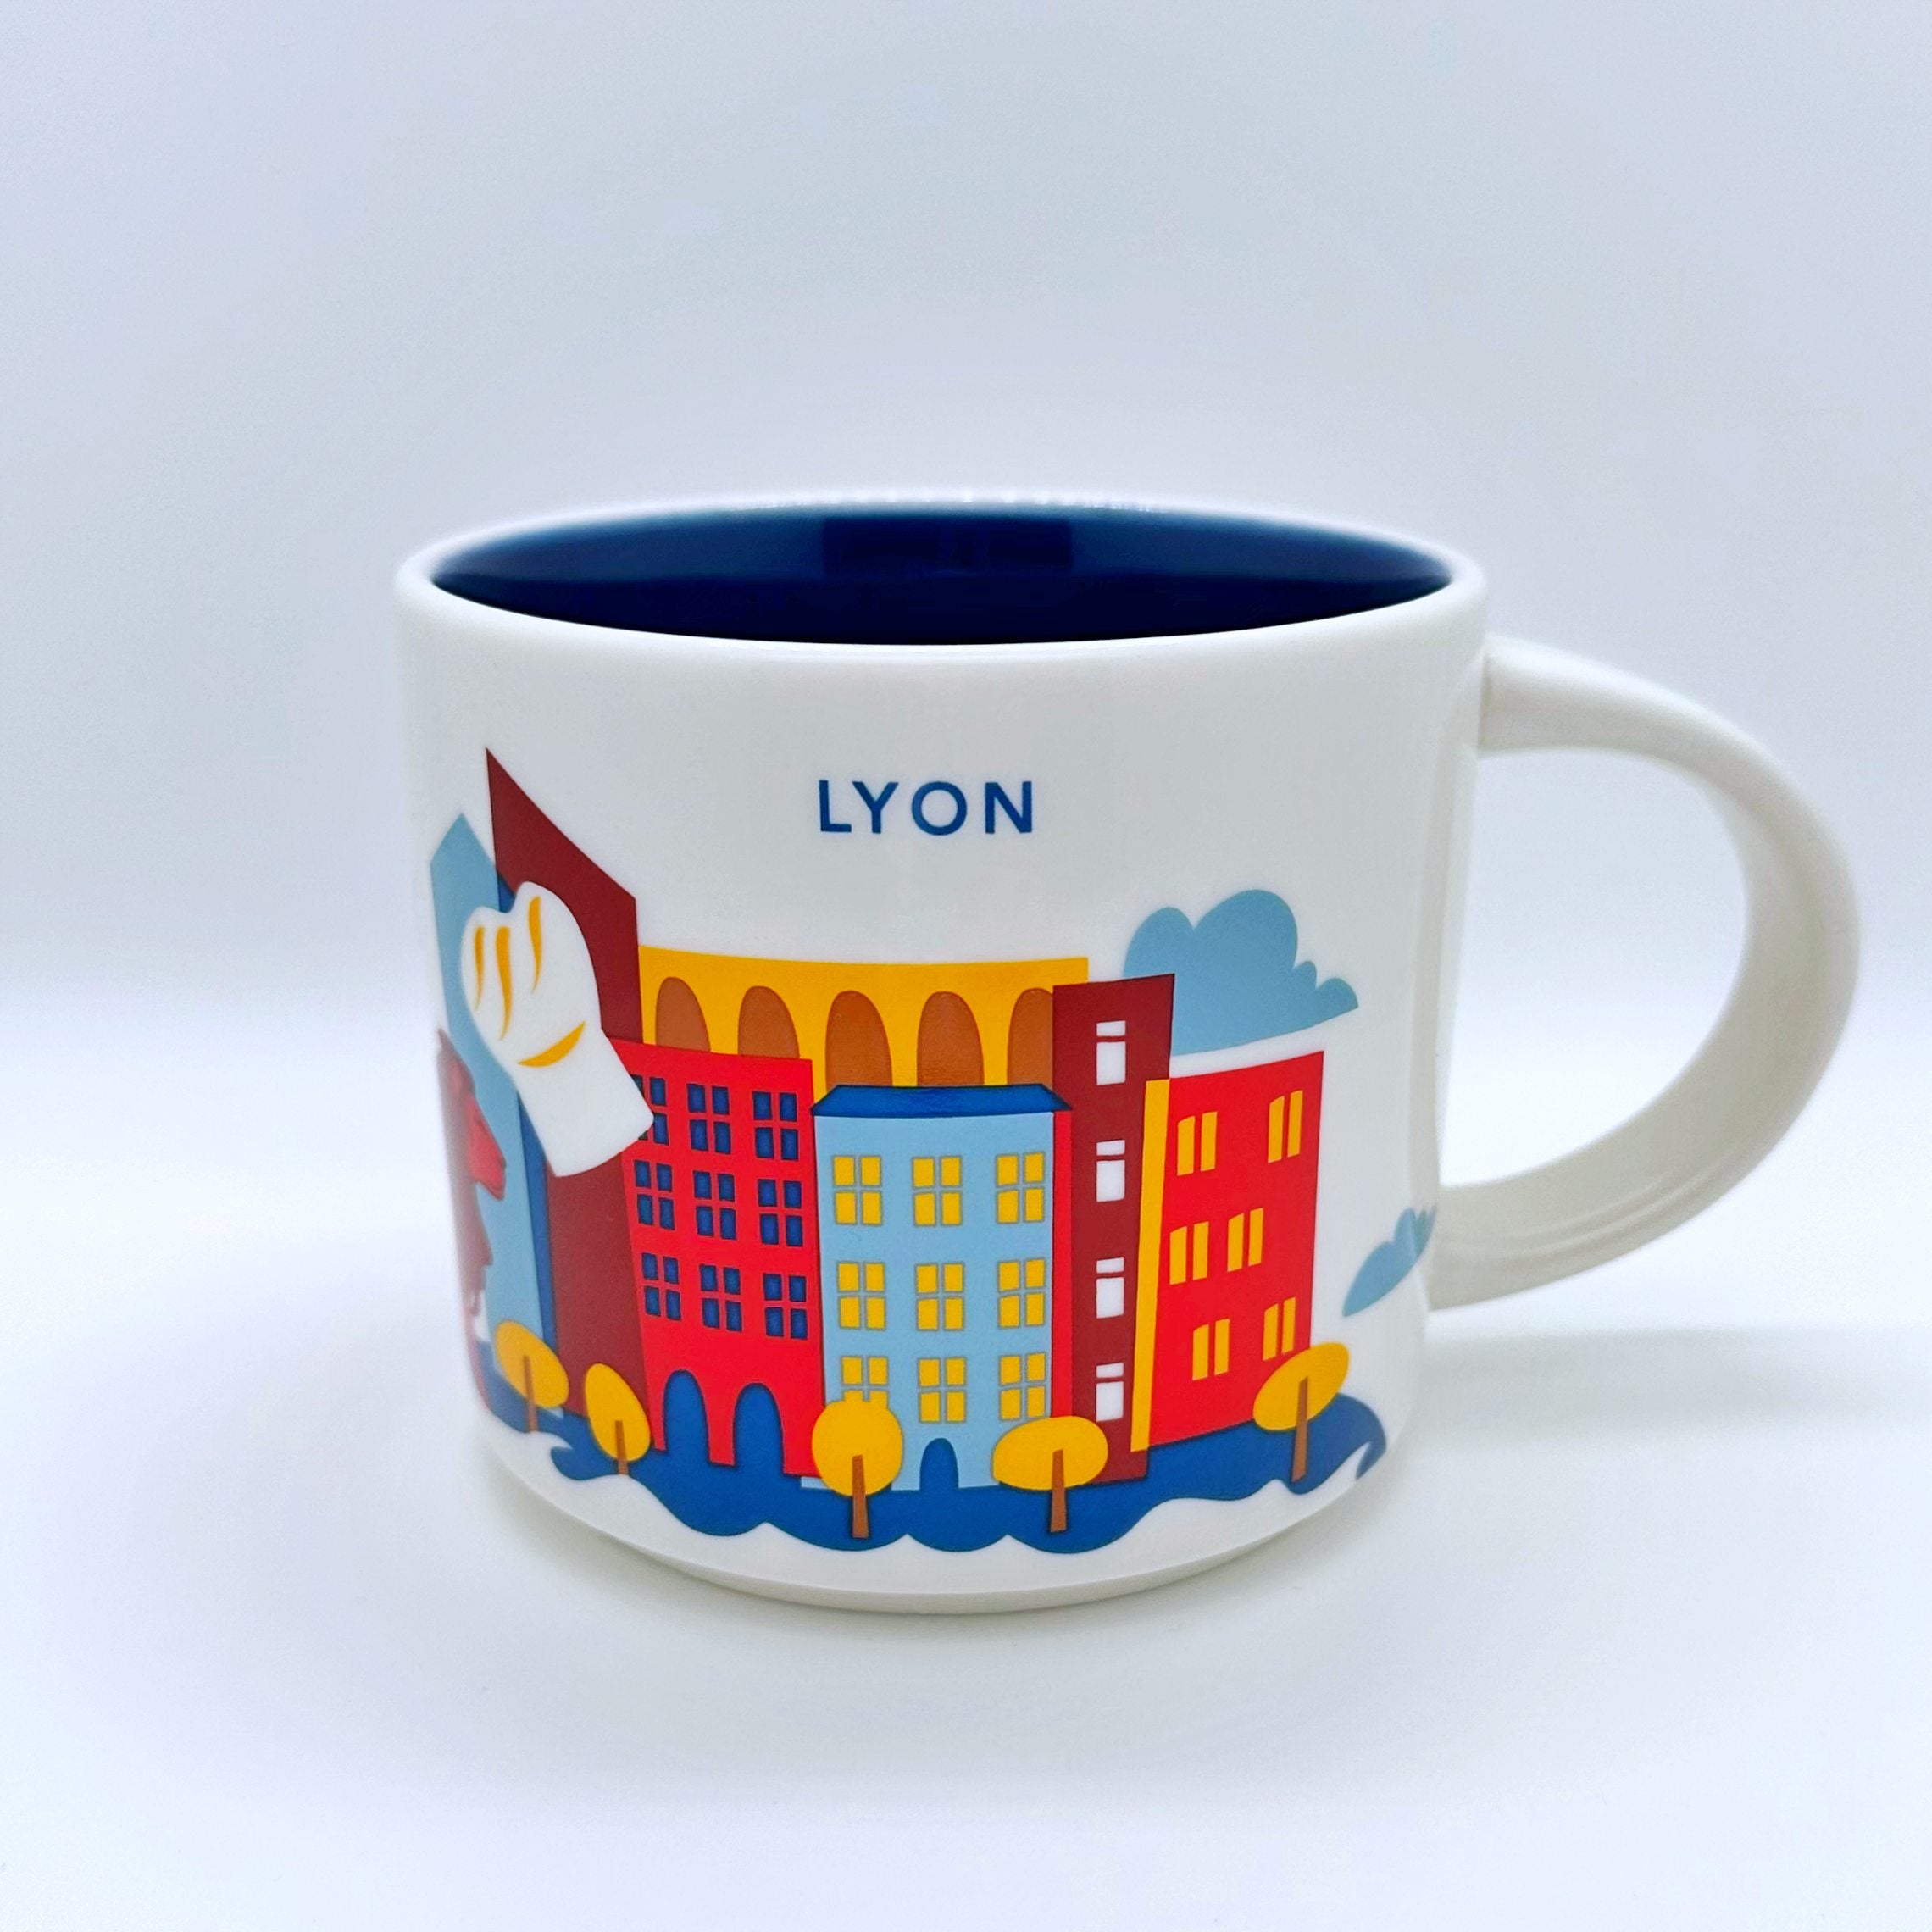 Kaffee Tee und Cappuccino Tasse von Starbucks mit gemalten Bildern aus der Stadt Lyon